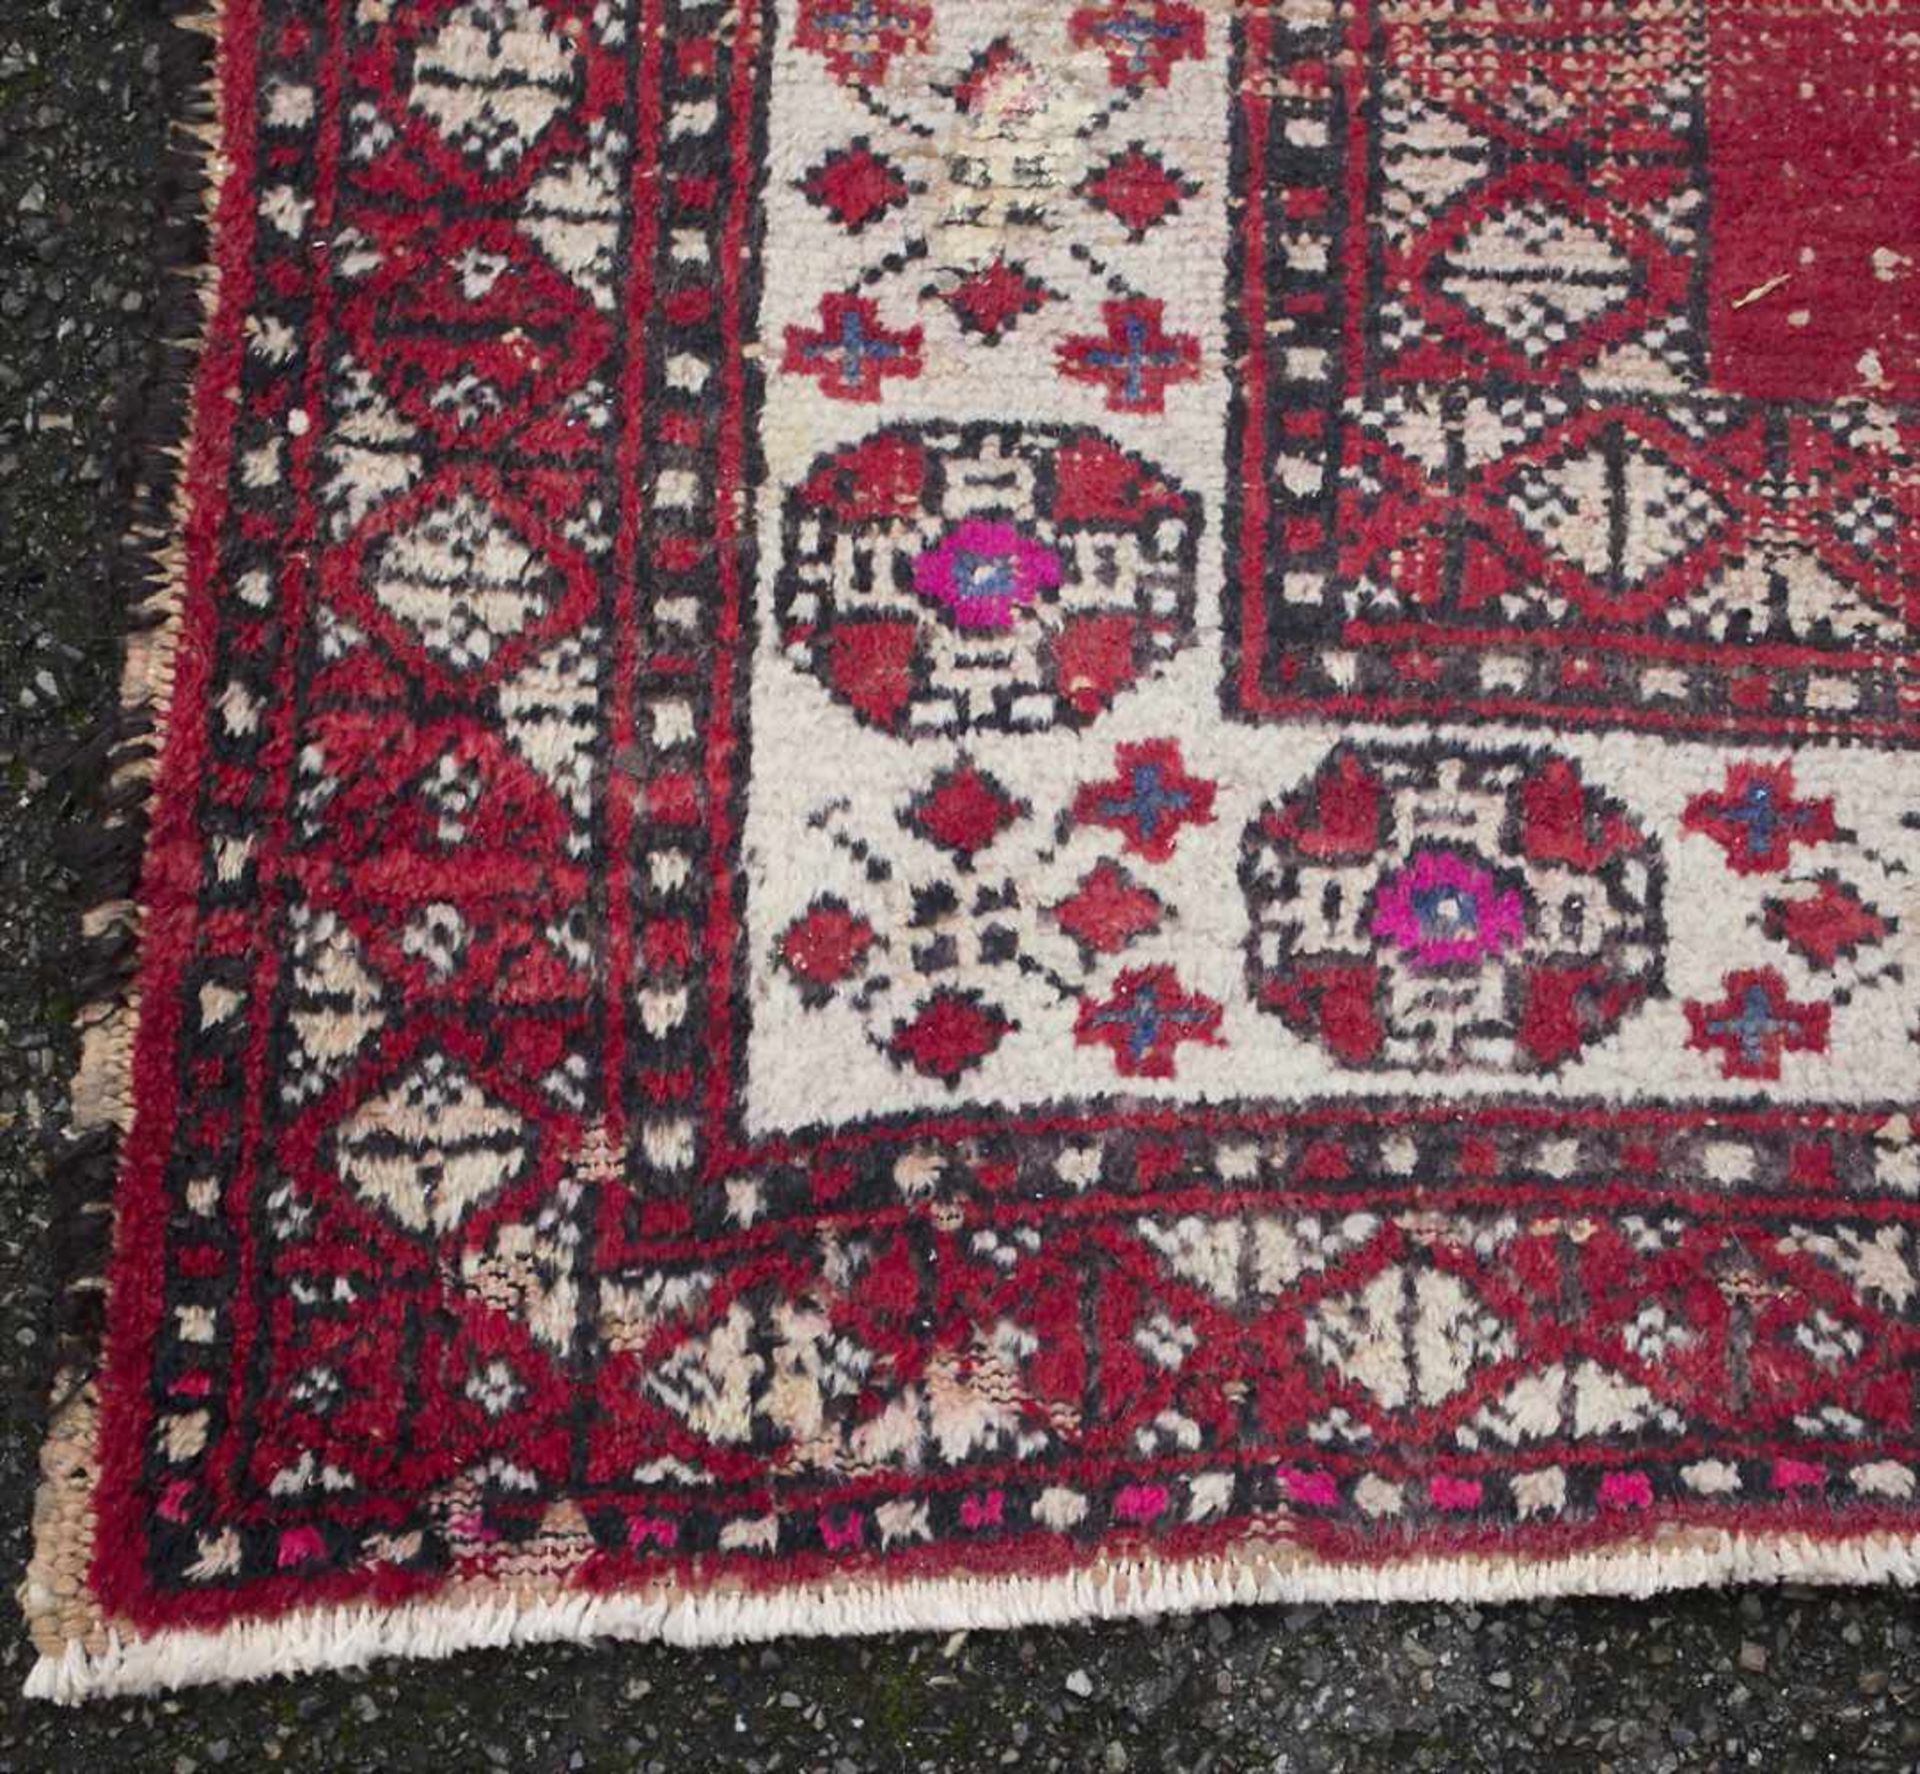 Orientteppich / An oriental carpetMaterial: Wolle auf Baumwolle, Maße: 208 x 122 cm, Zustand: - Bild 4 aus 5